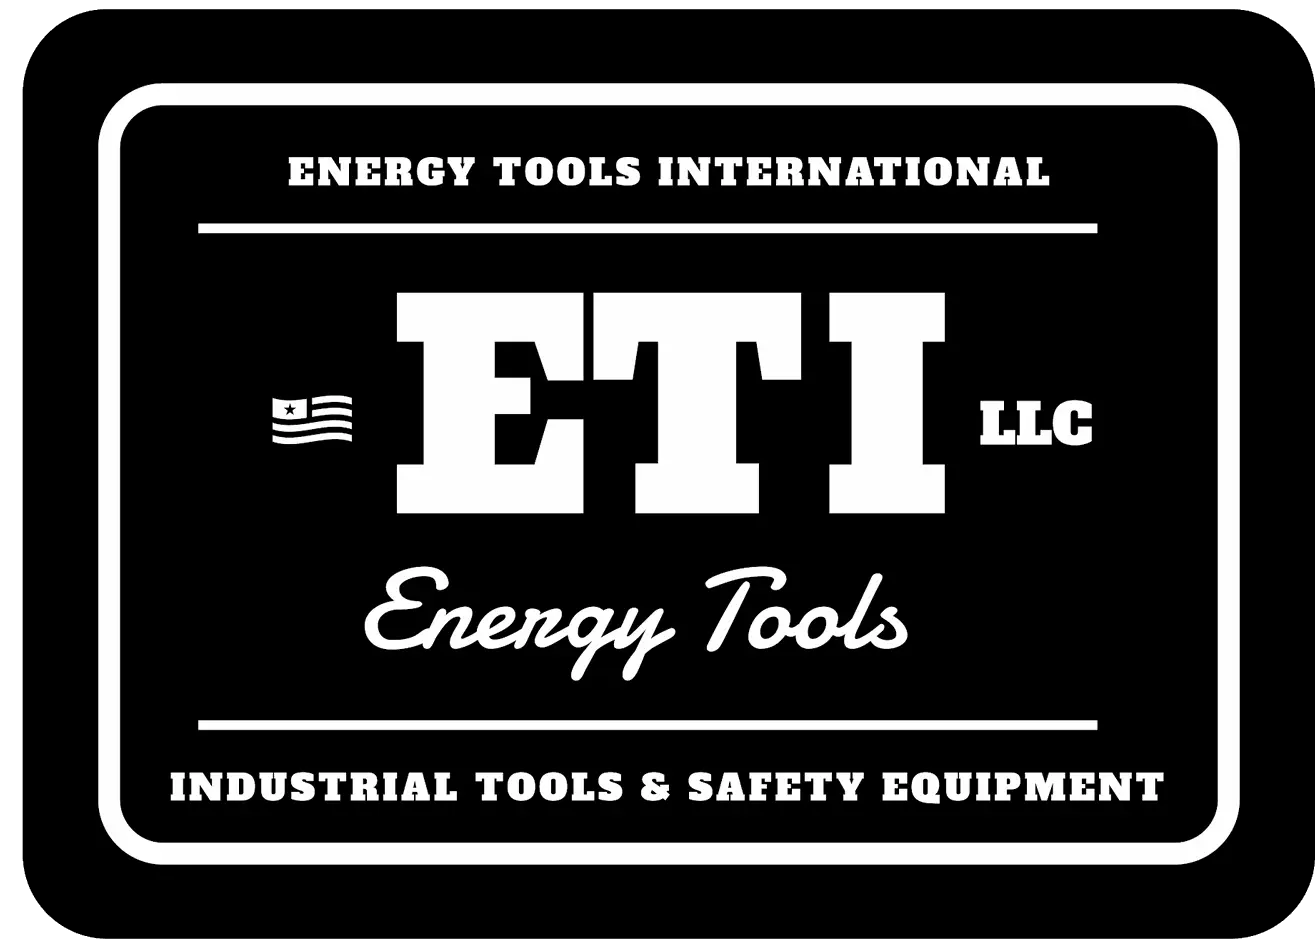 ETI Energy Tools